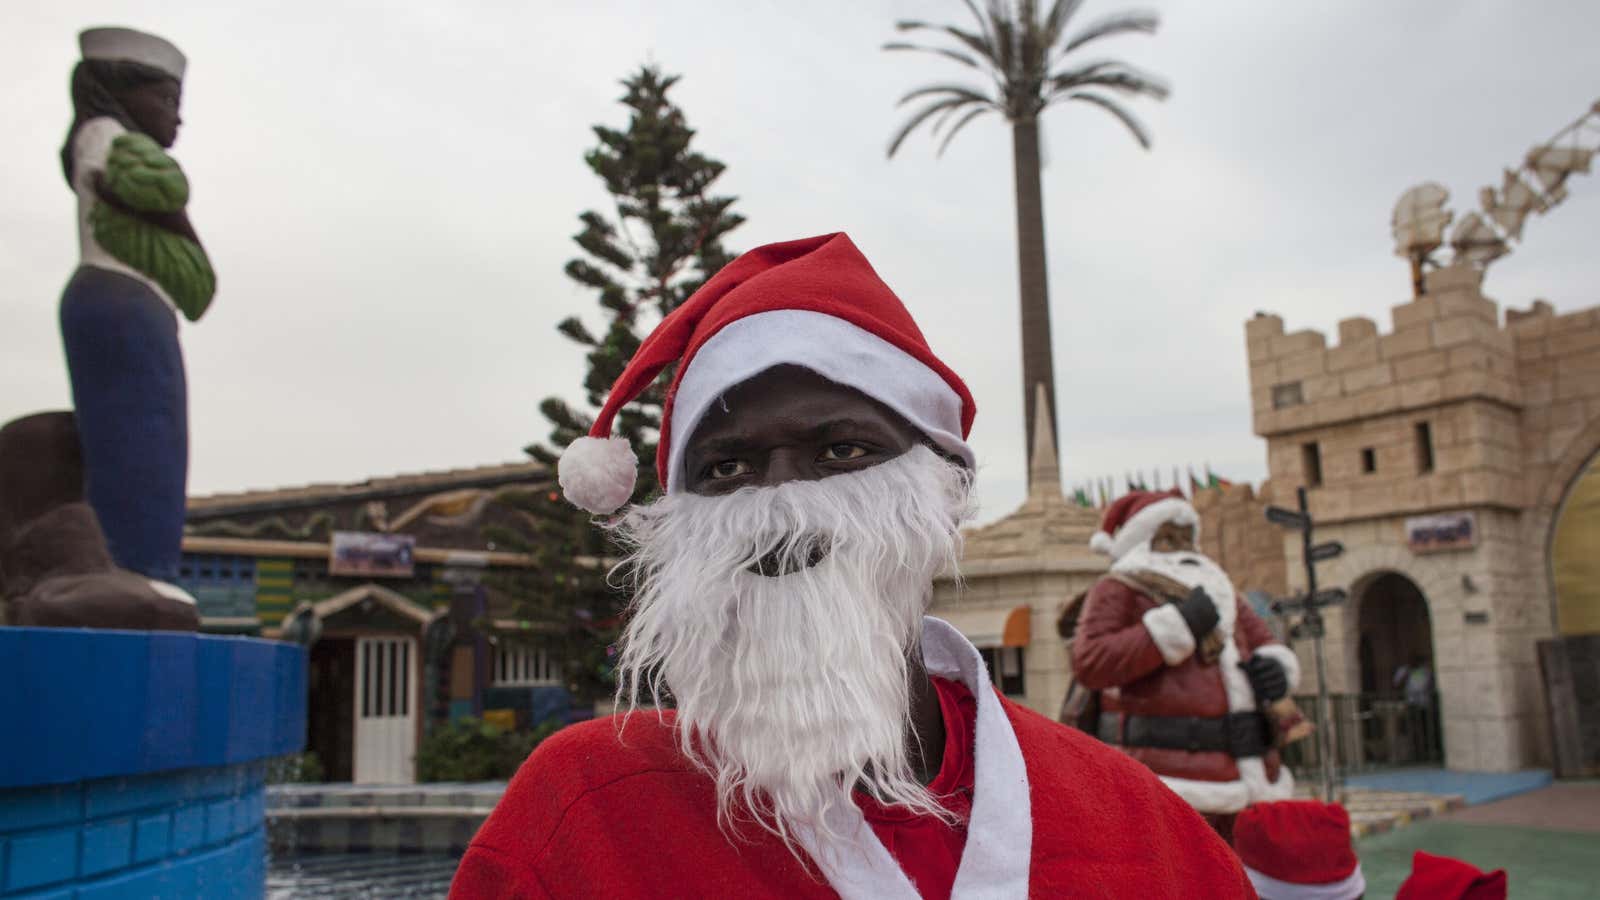 A magical Christmas in Dakar, Senegal.